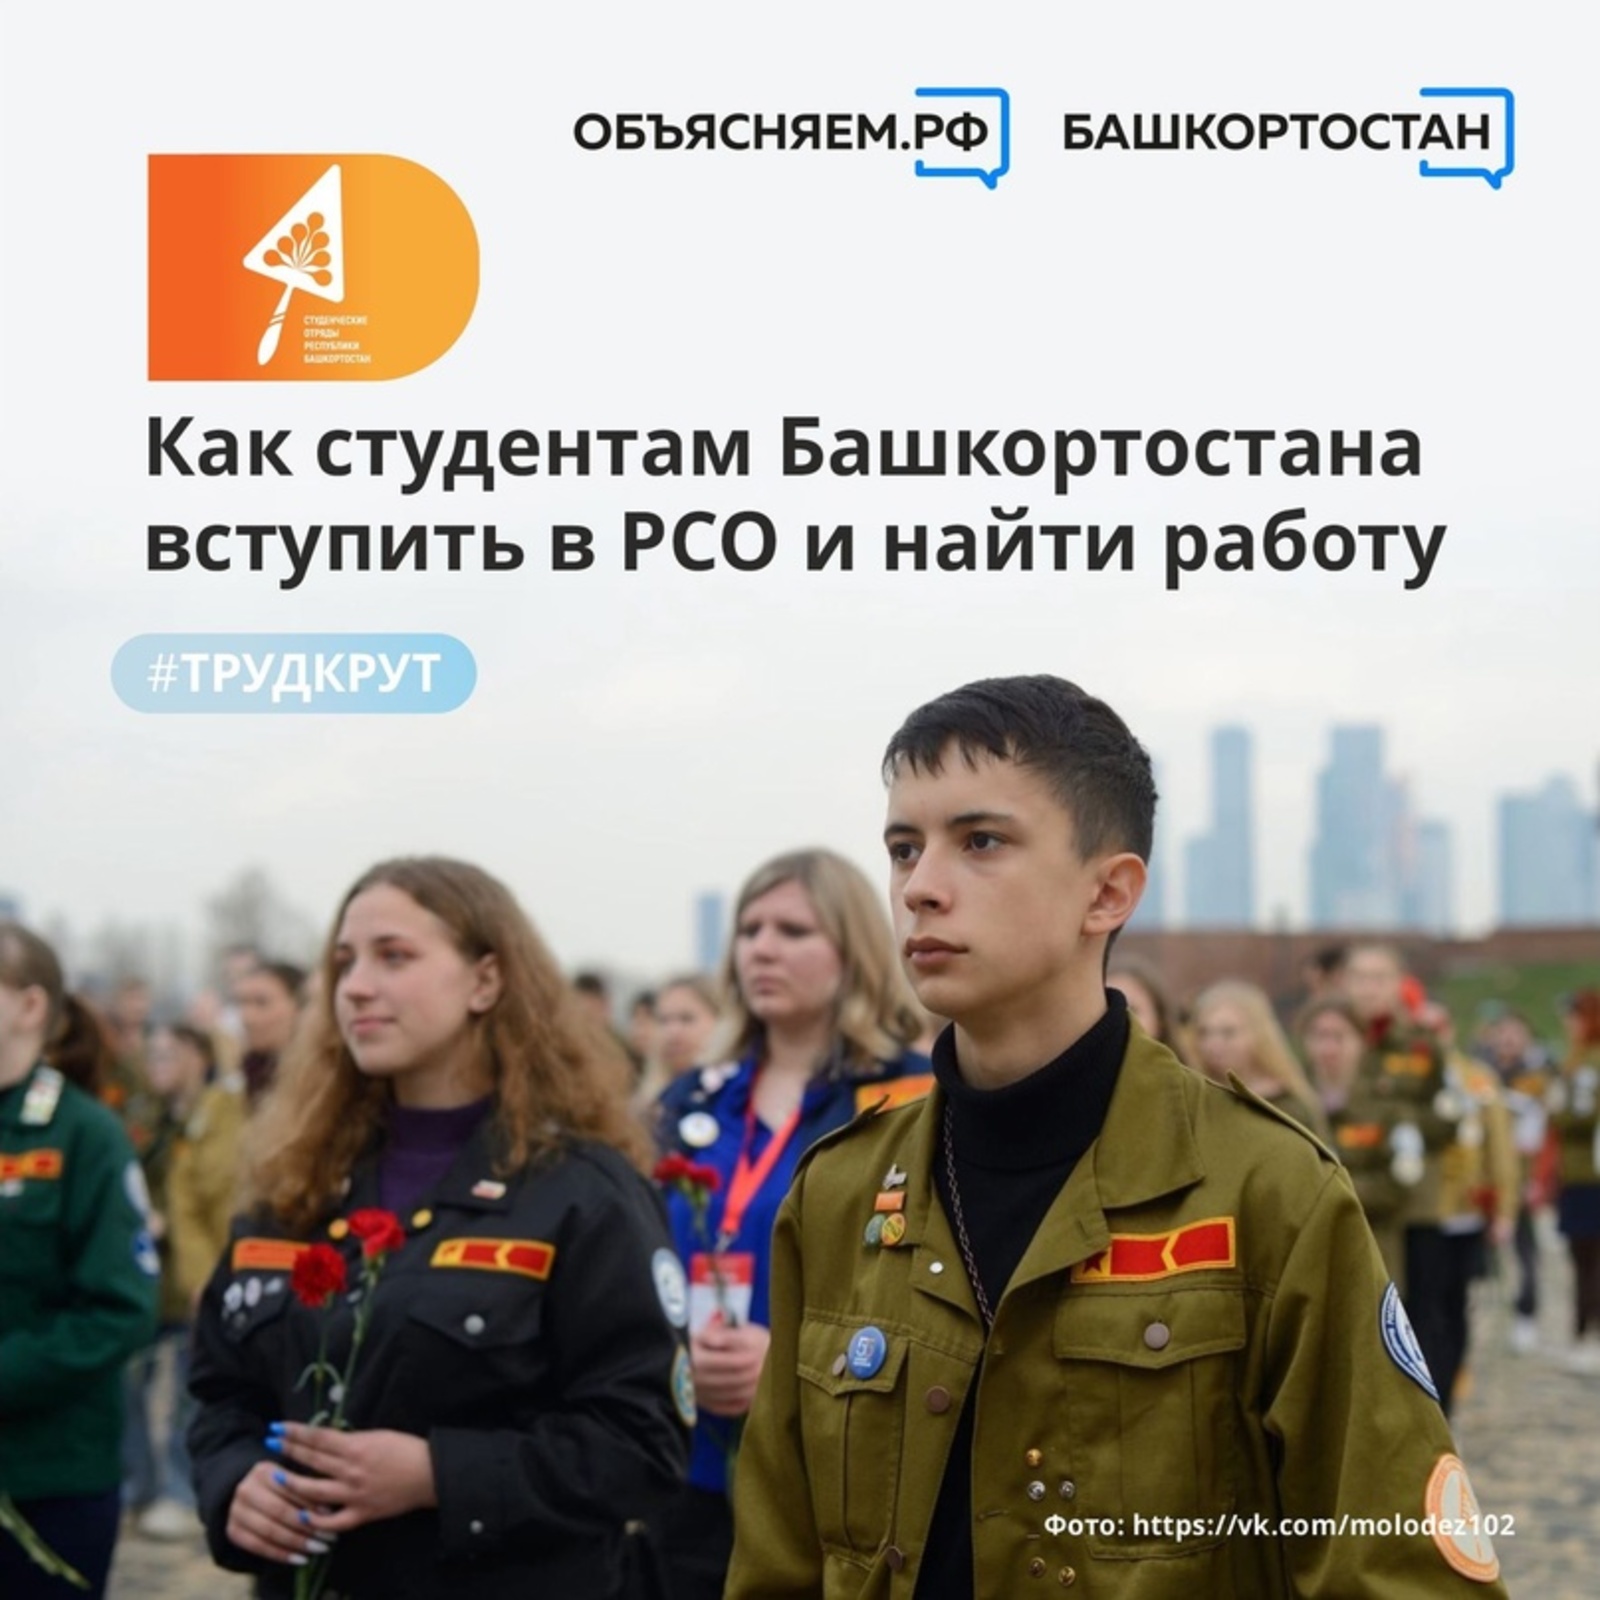 Студенты из Башкортостана могут найти работу благодаря участию в Российских студенческих отрядах (РСО)